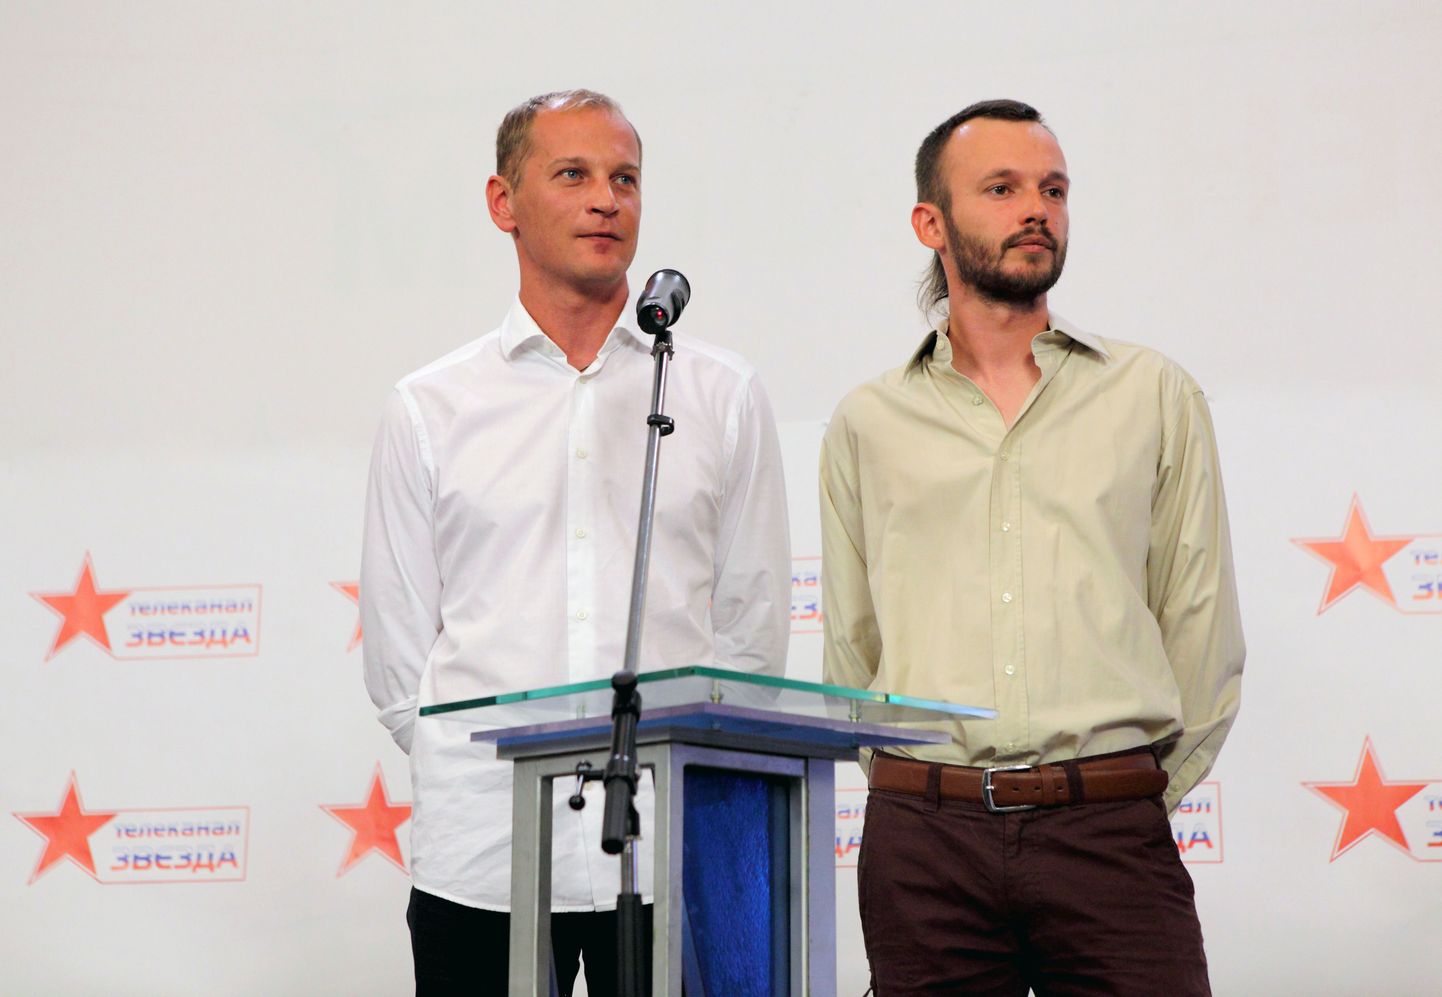 Zvezda heaks töötavad ajakirjanikud Anton Malõšev (paremal) ja Andrei Sušenkov.